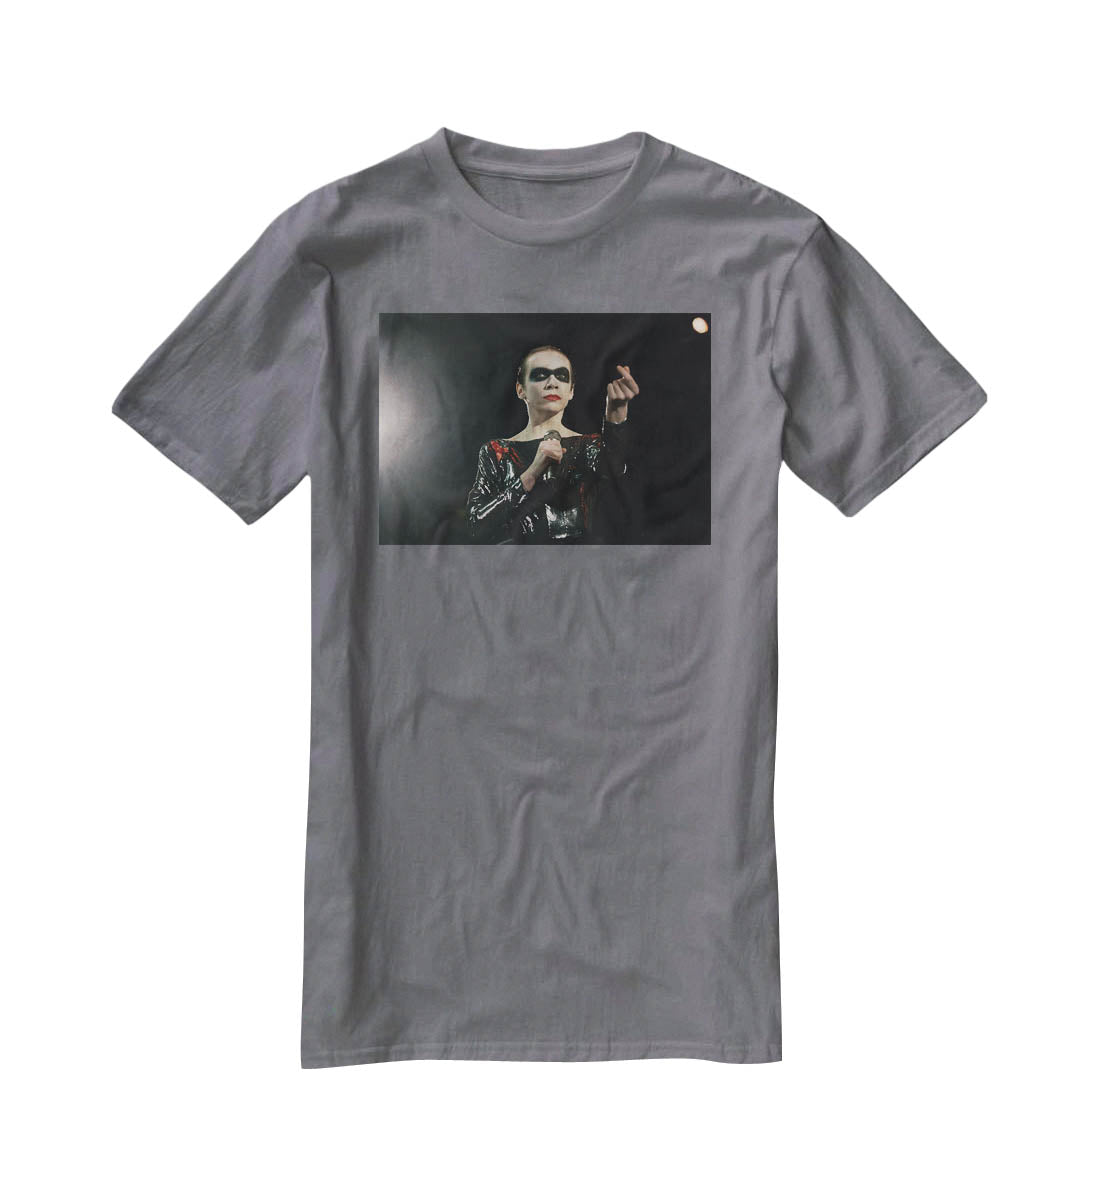 Annie Lennox in concert T-Shirt - Canvas Art Rocks - 3